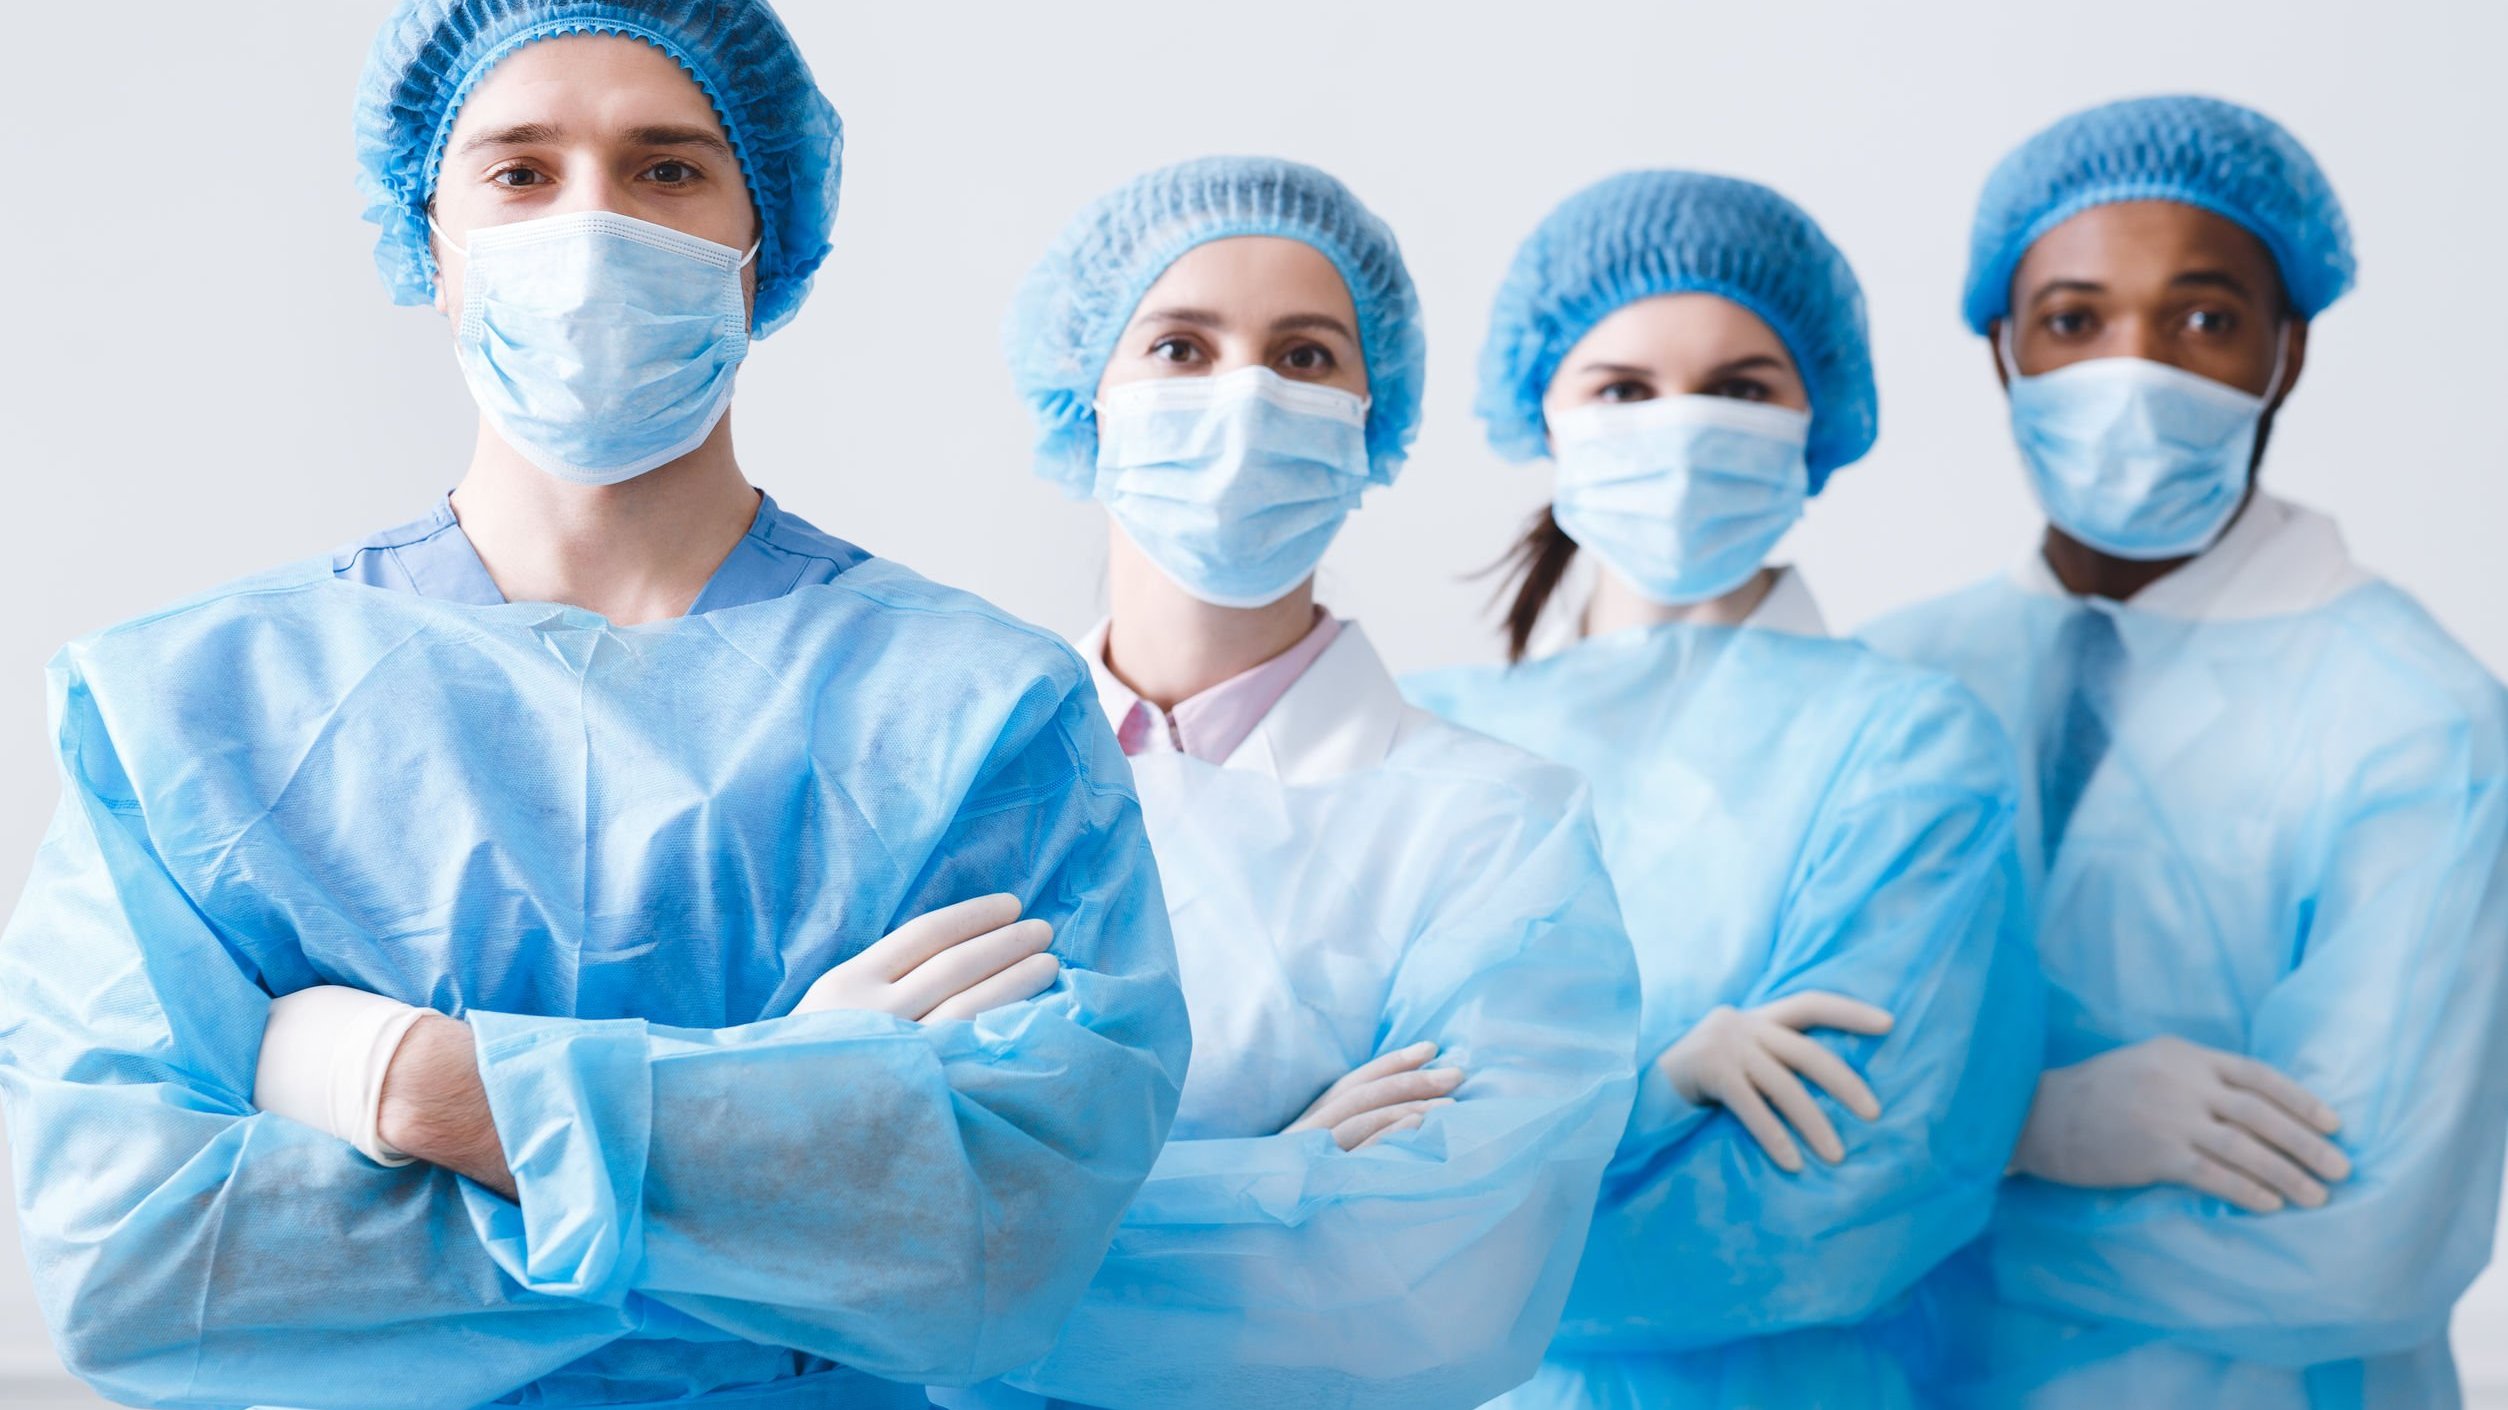 Quatro médicos usando roupas e acessórios cirúrgicos.